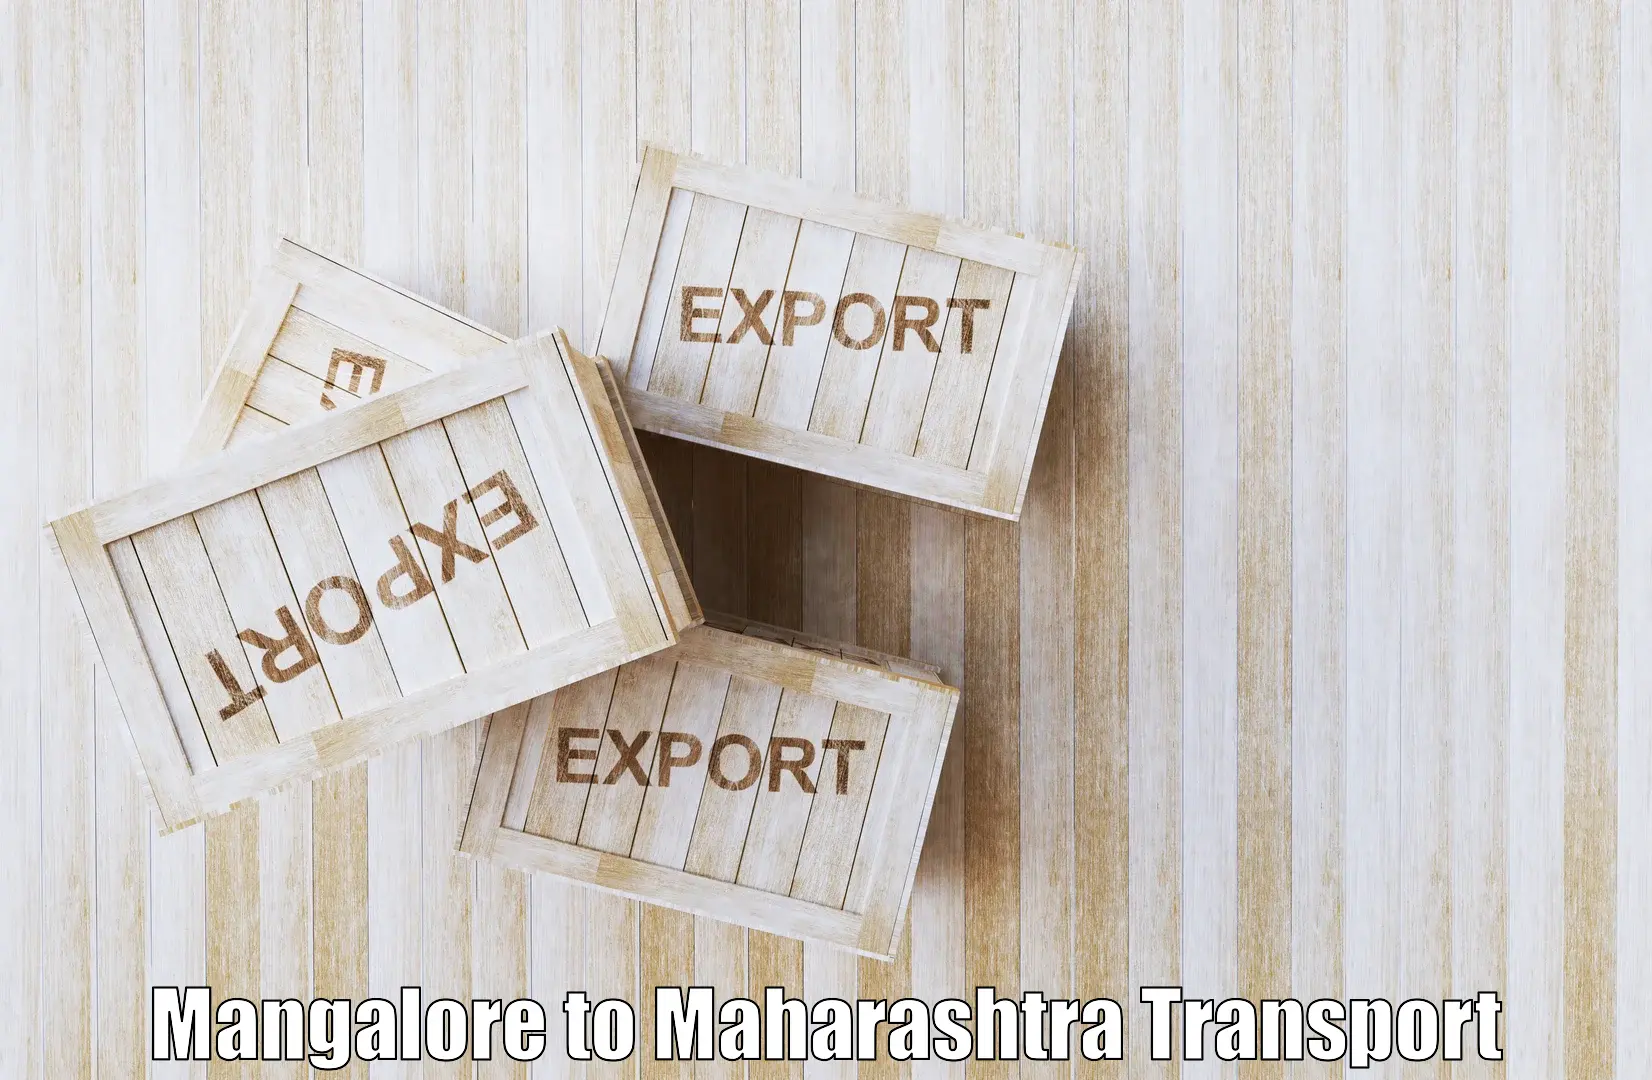 Intercity transport Mangalore to Gadchiroli